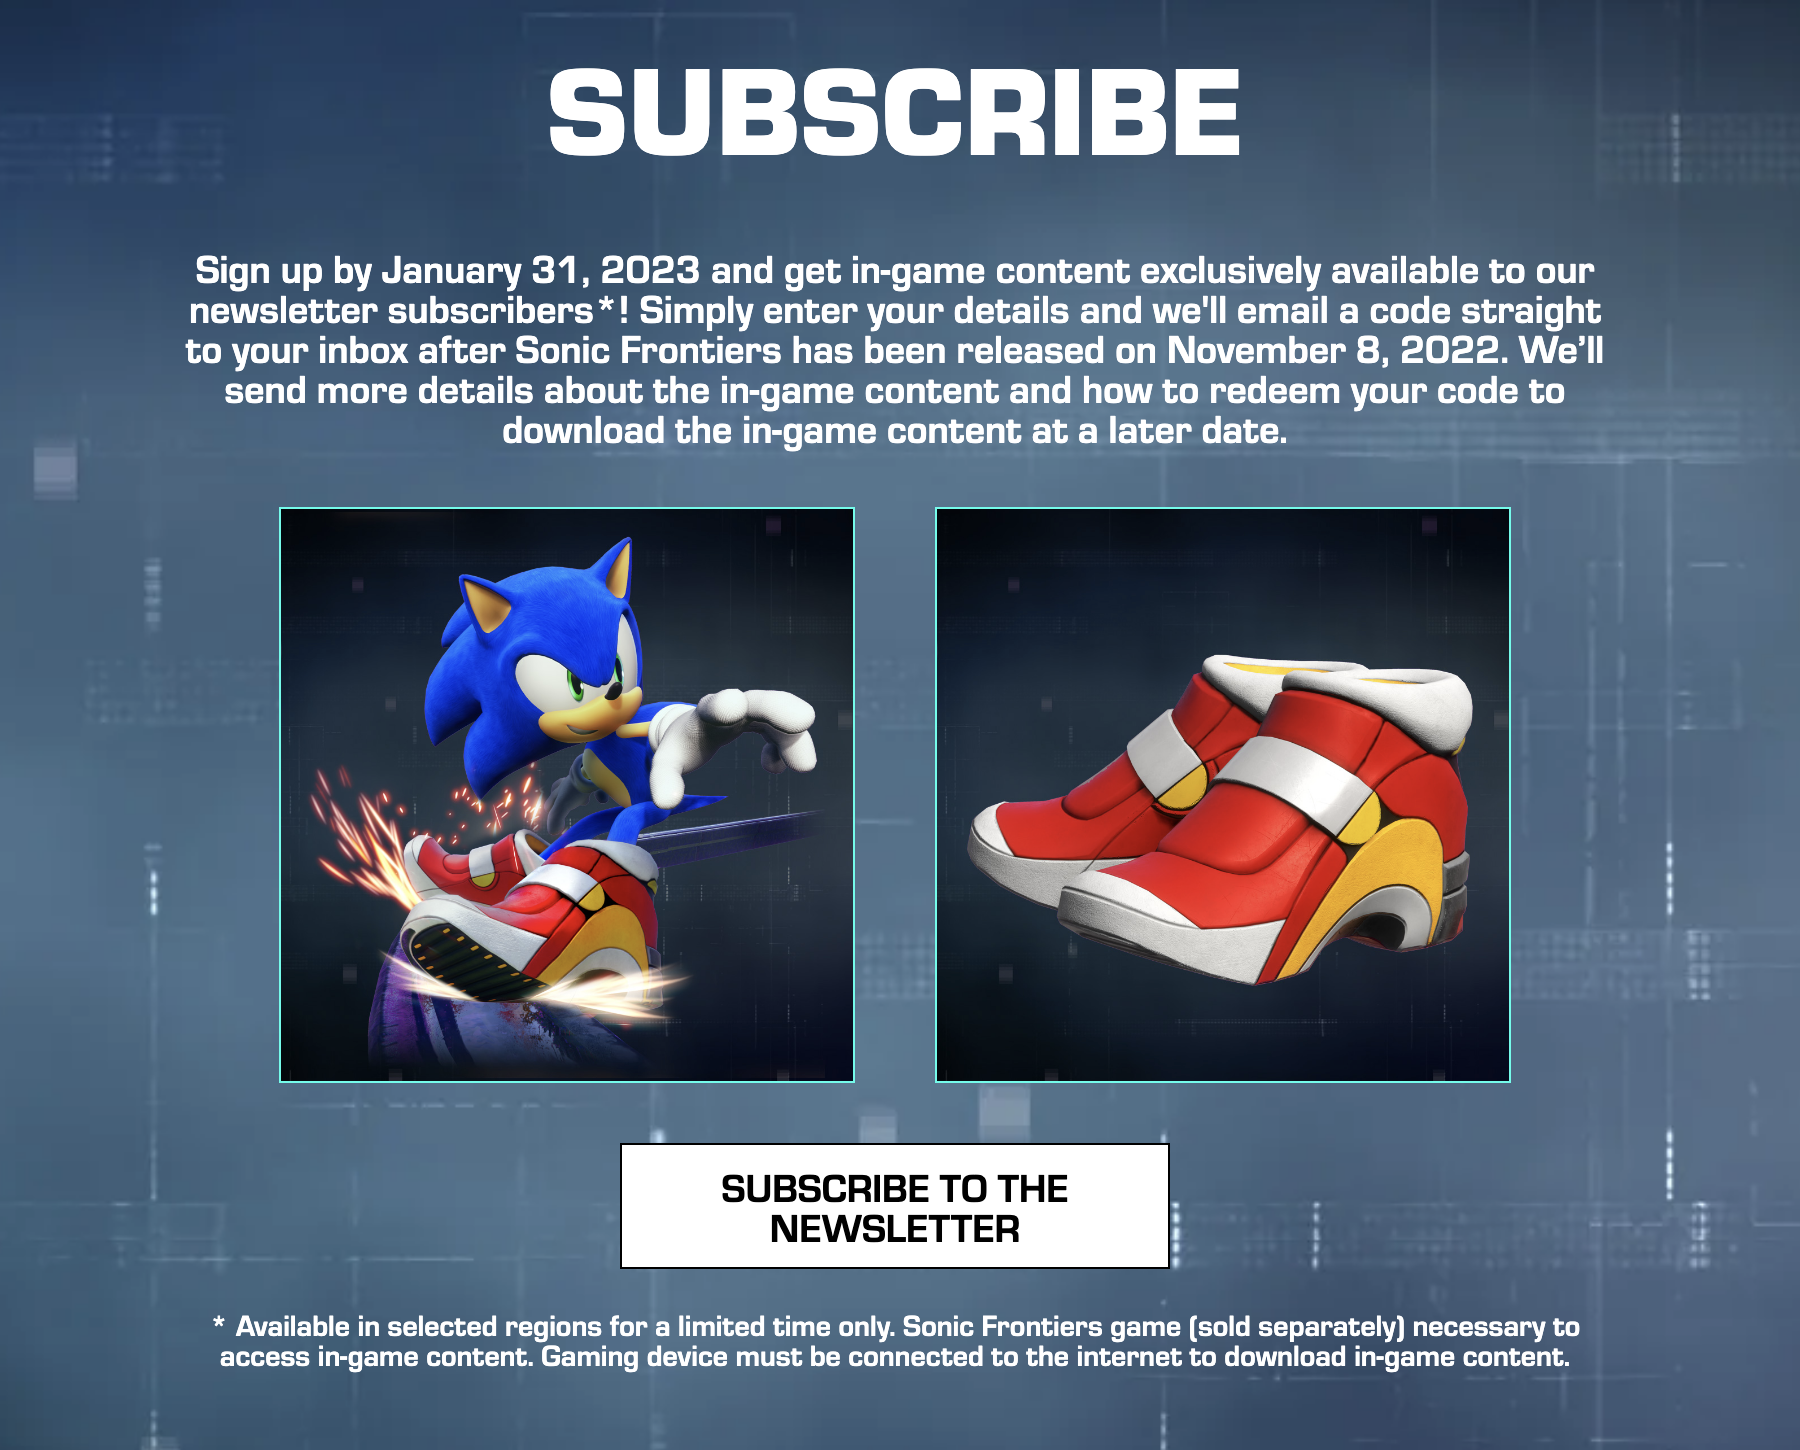 Sonic Adventure 2: Battle  Steam PC Downloadable Content